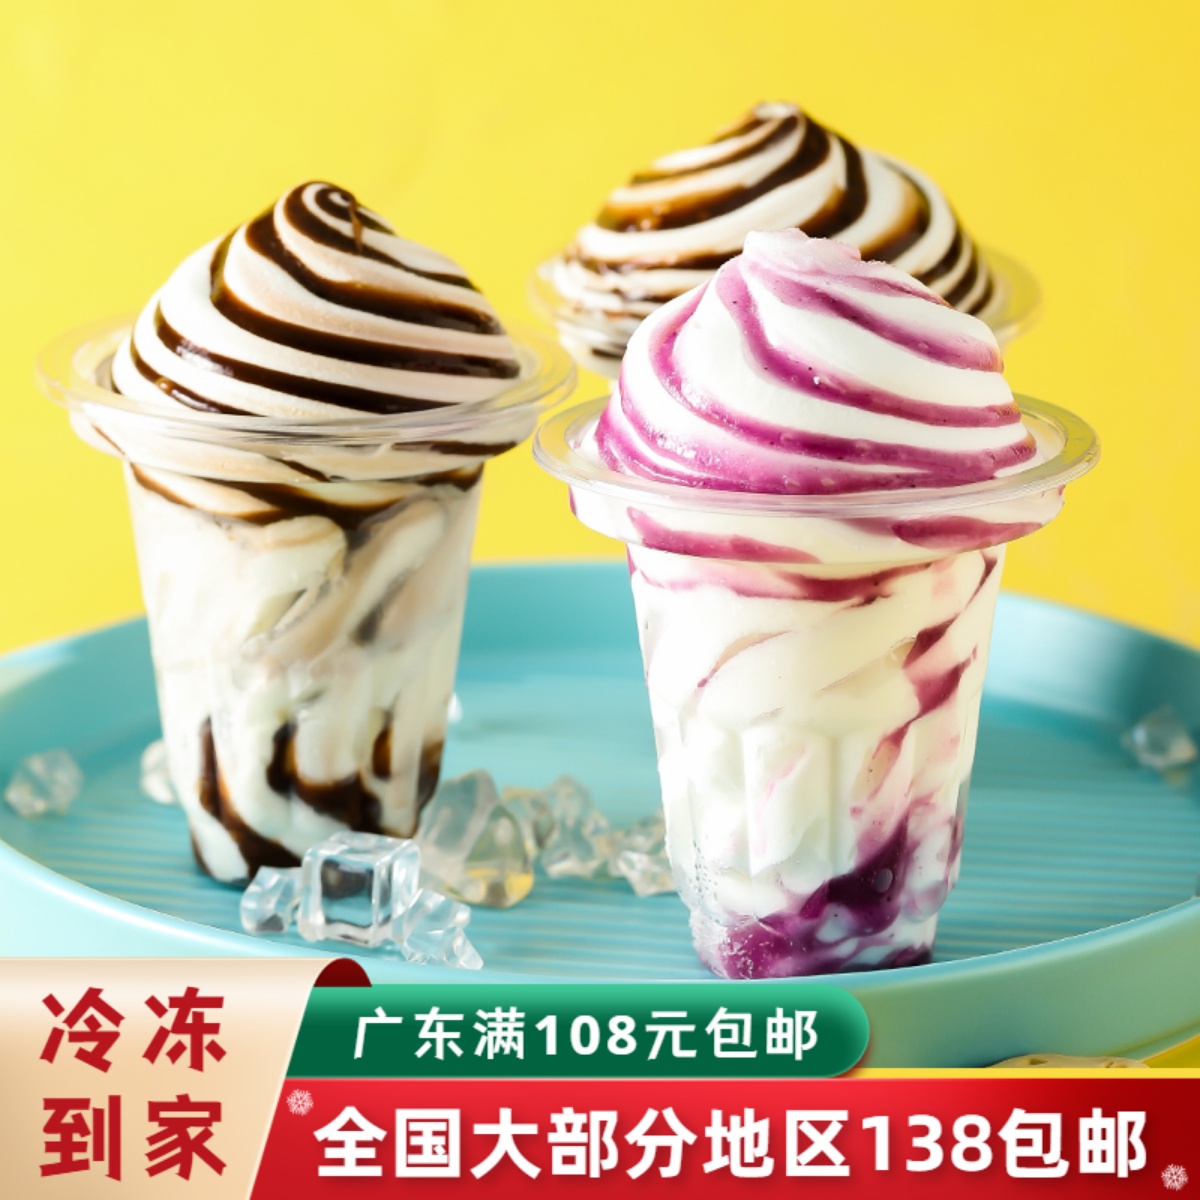 【3杯】蒙牛随变雪糕旋顶杯冰淇淋酸奶蓝莓味香草巧克力味冰激凌